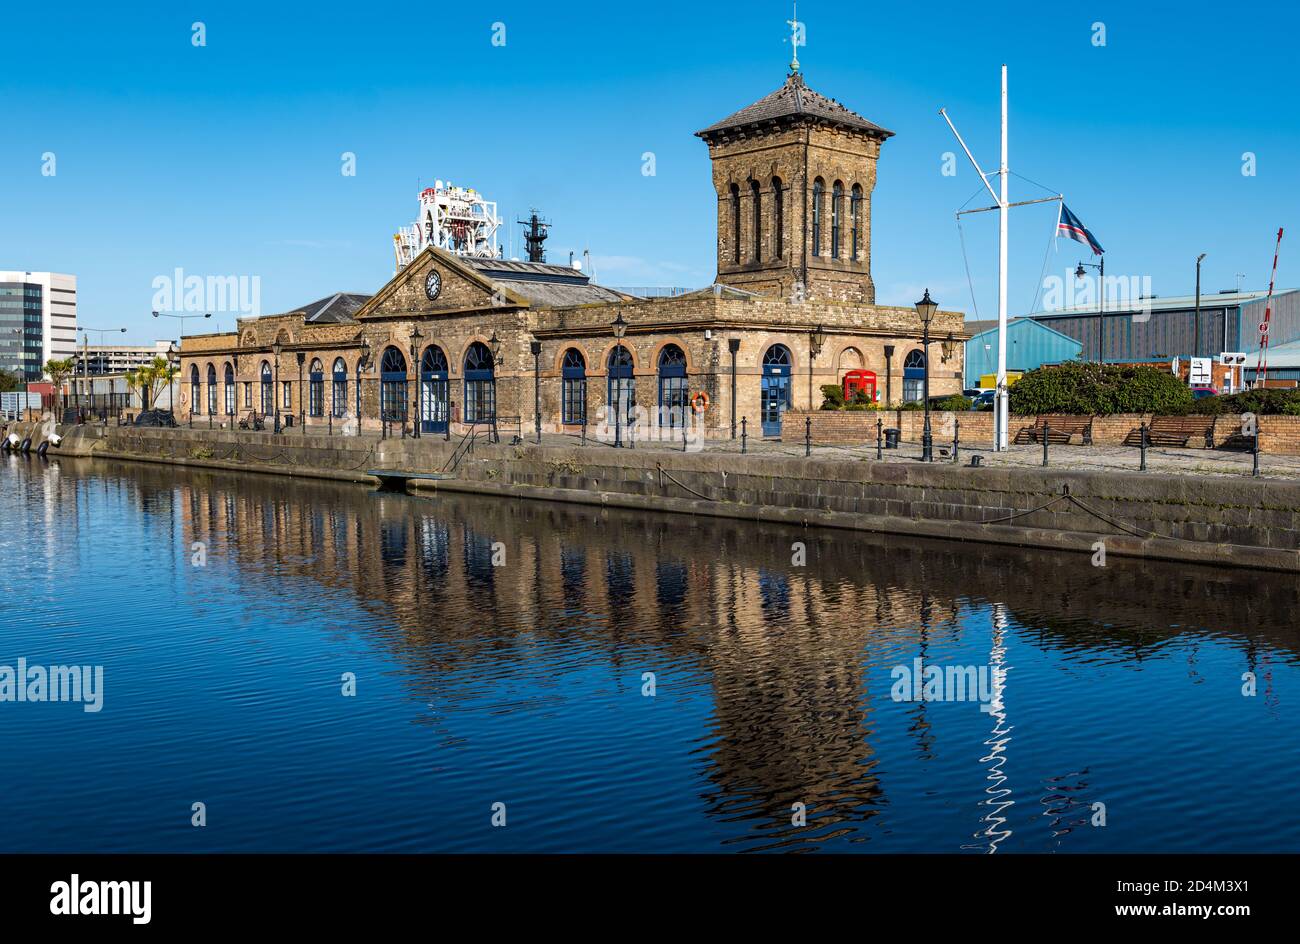 Hafen von Leith Hauptquartier Gebäude am Hafen reflektiert im Wasser, Leith Hafen, Edinburgh, Schottland, Großbritannien Stockfoto